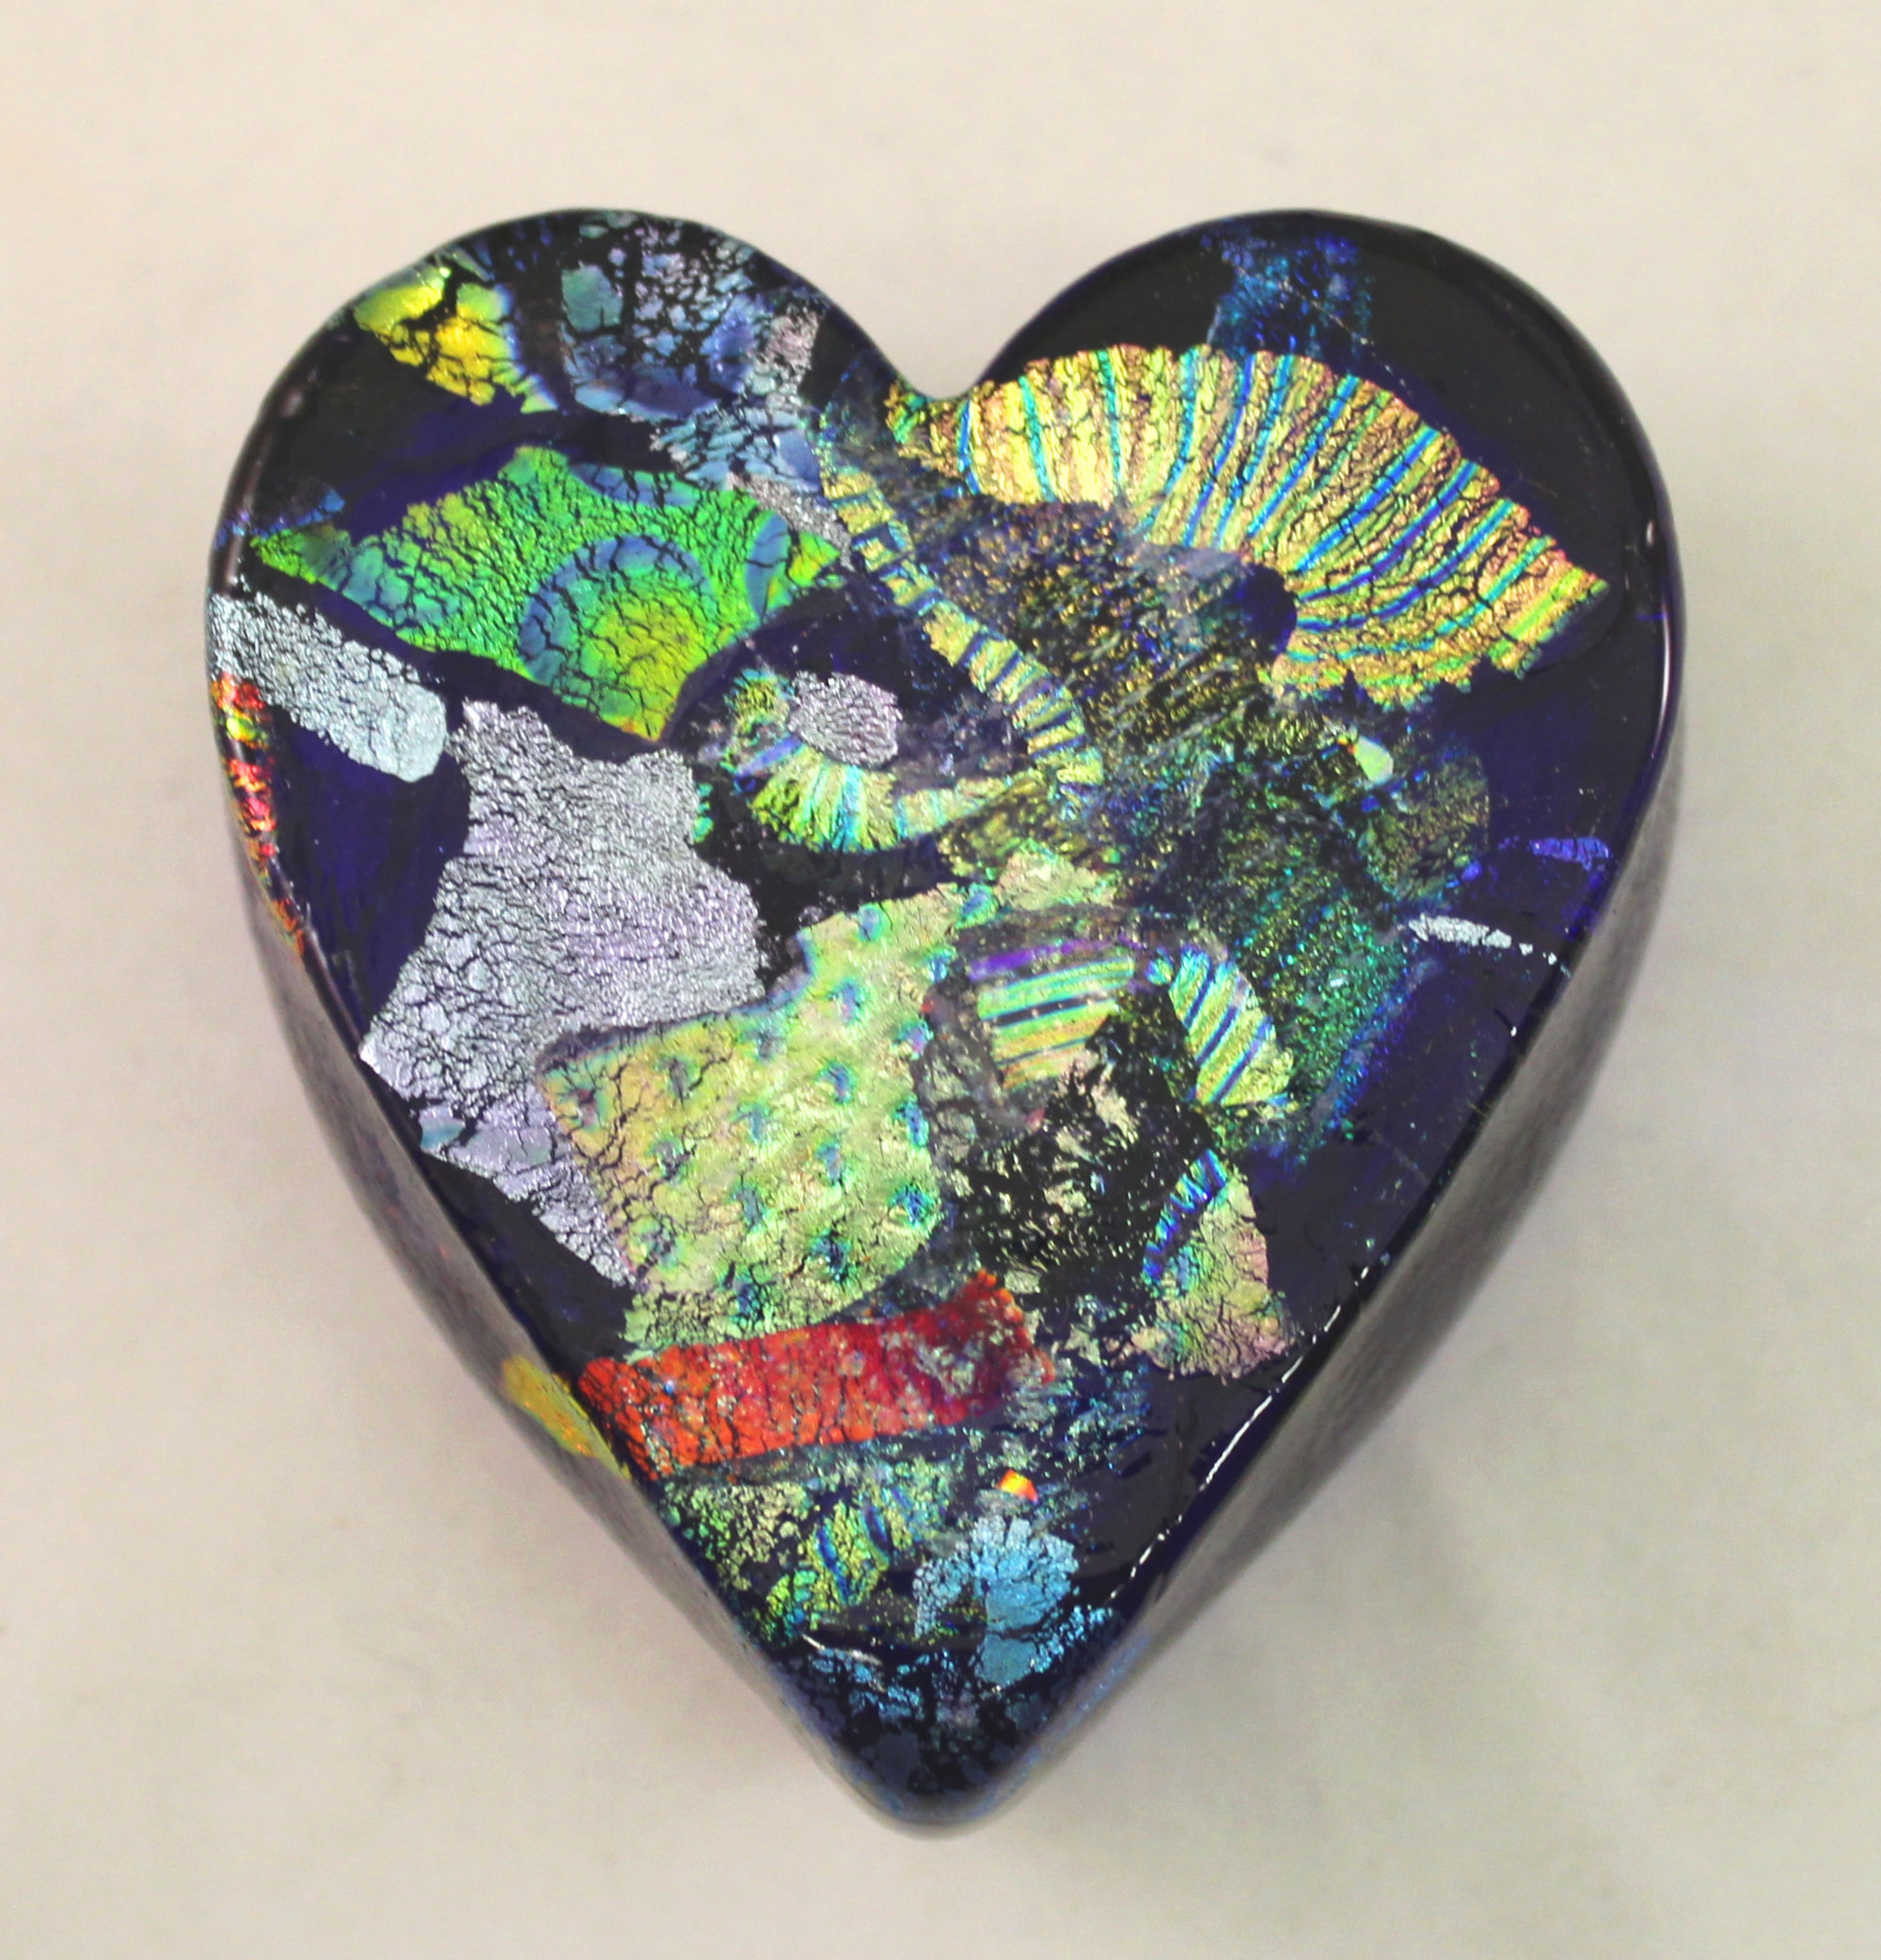 Cobalt Dichroic Glass Heart Paperweight By Ken Hanson And Ingrid Hanson Art Glass Paperweight